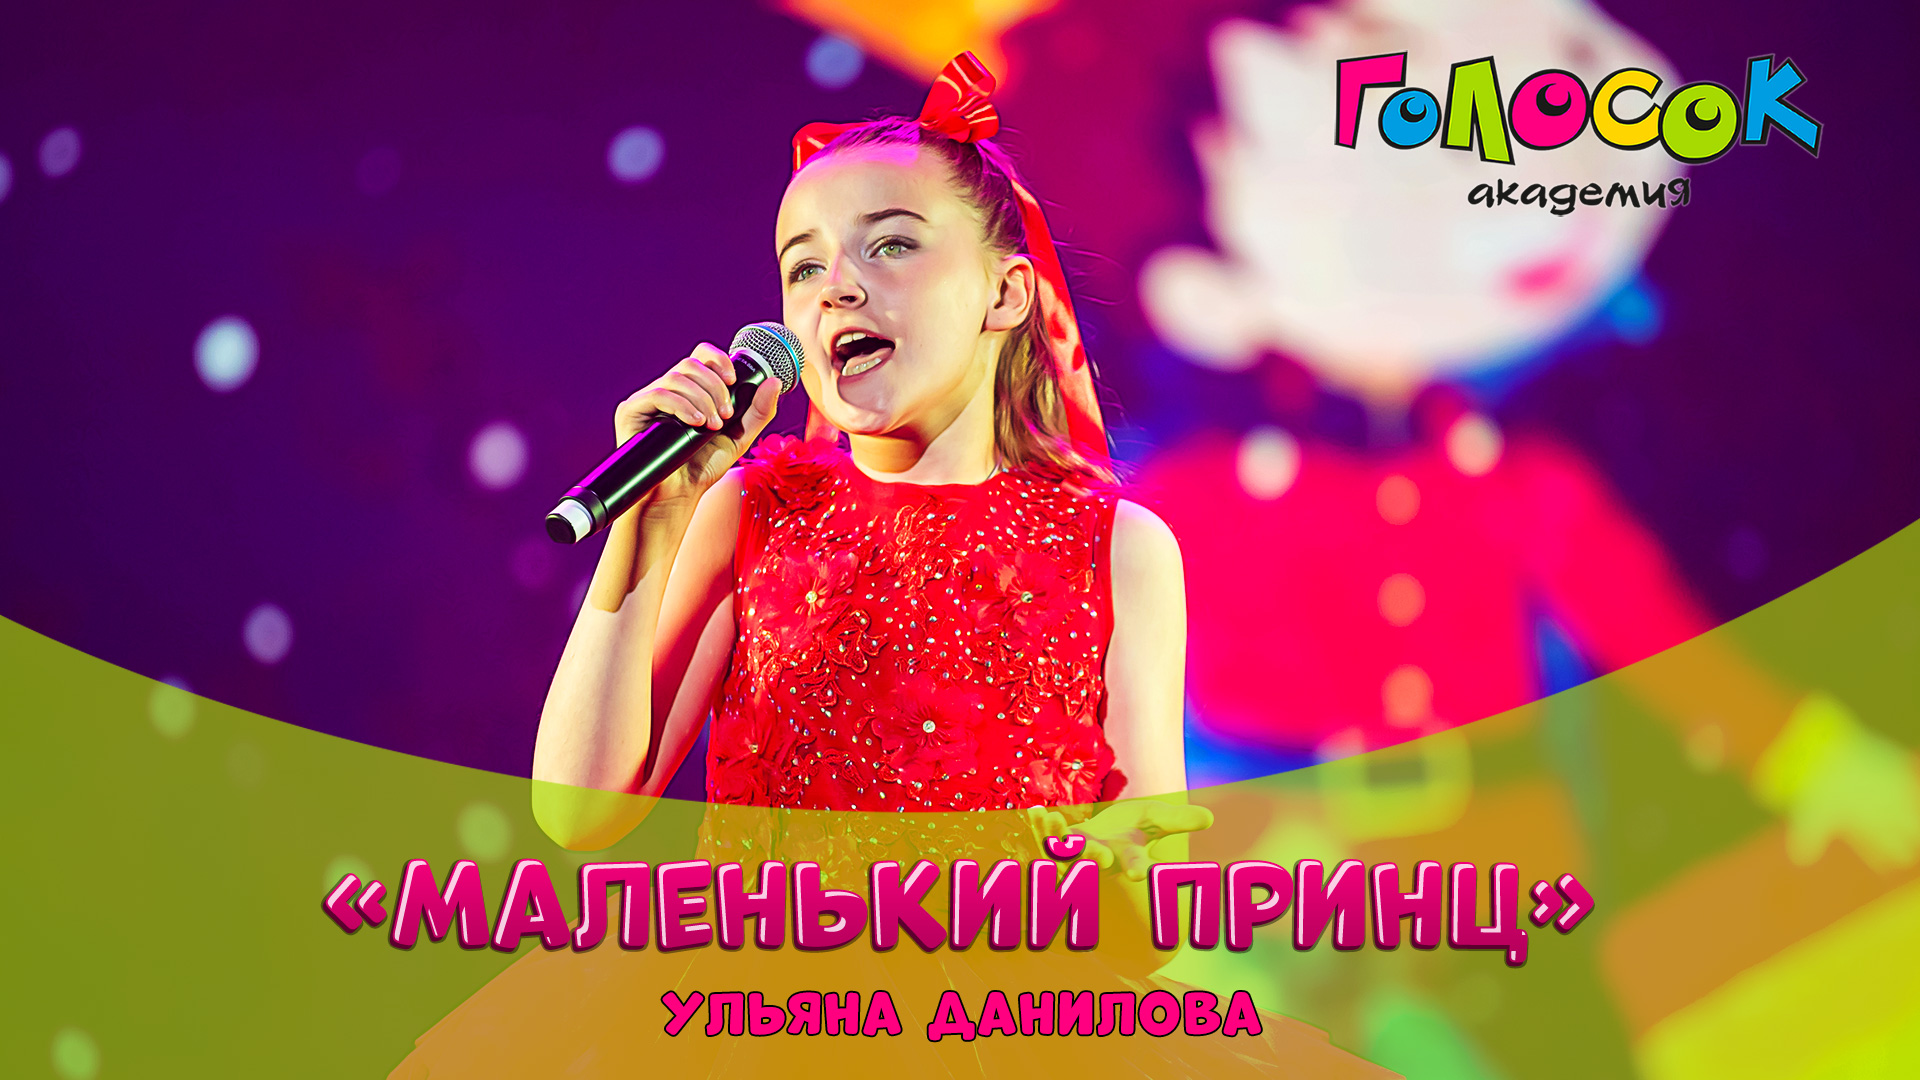 Детская песня - Маленький принц | Академия Голосок | Ульяна Данилова (9 лет)